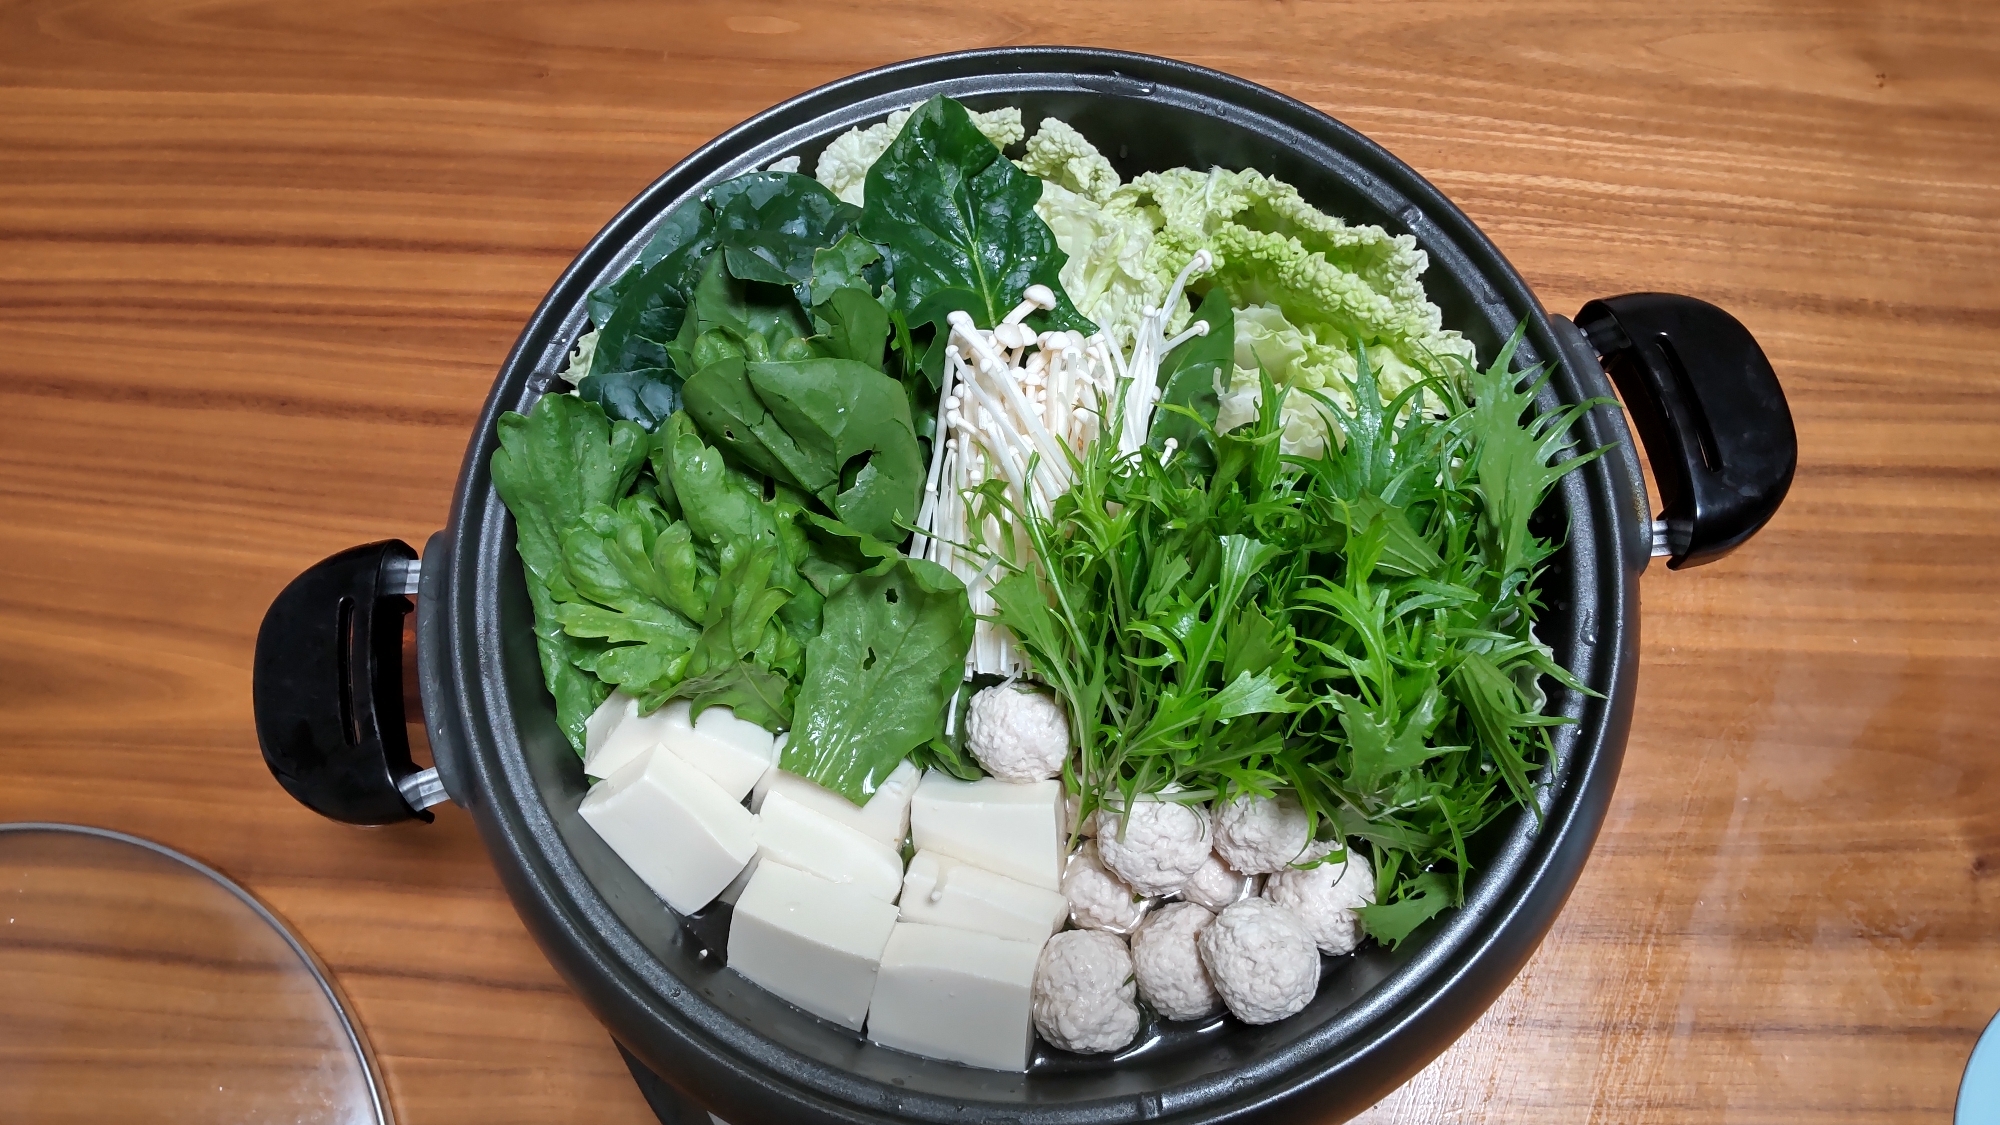 【簡単】野菜たっぷり鍋